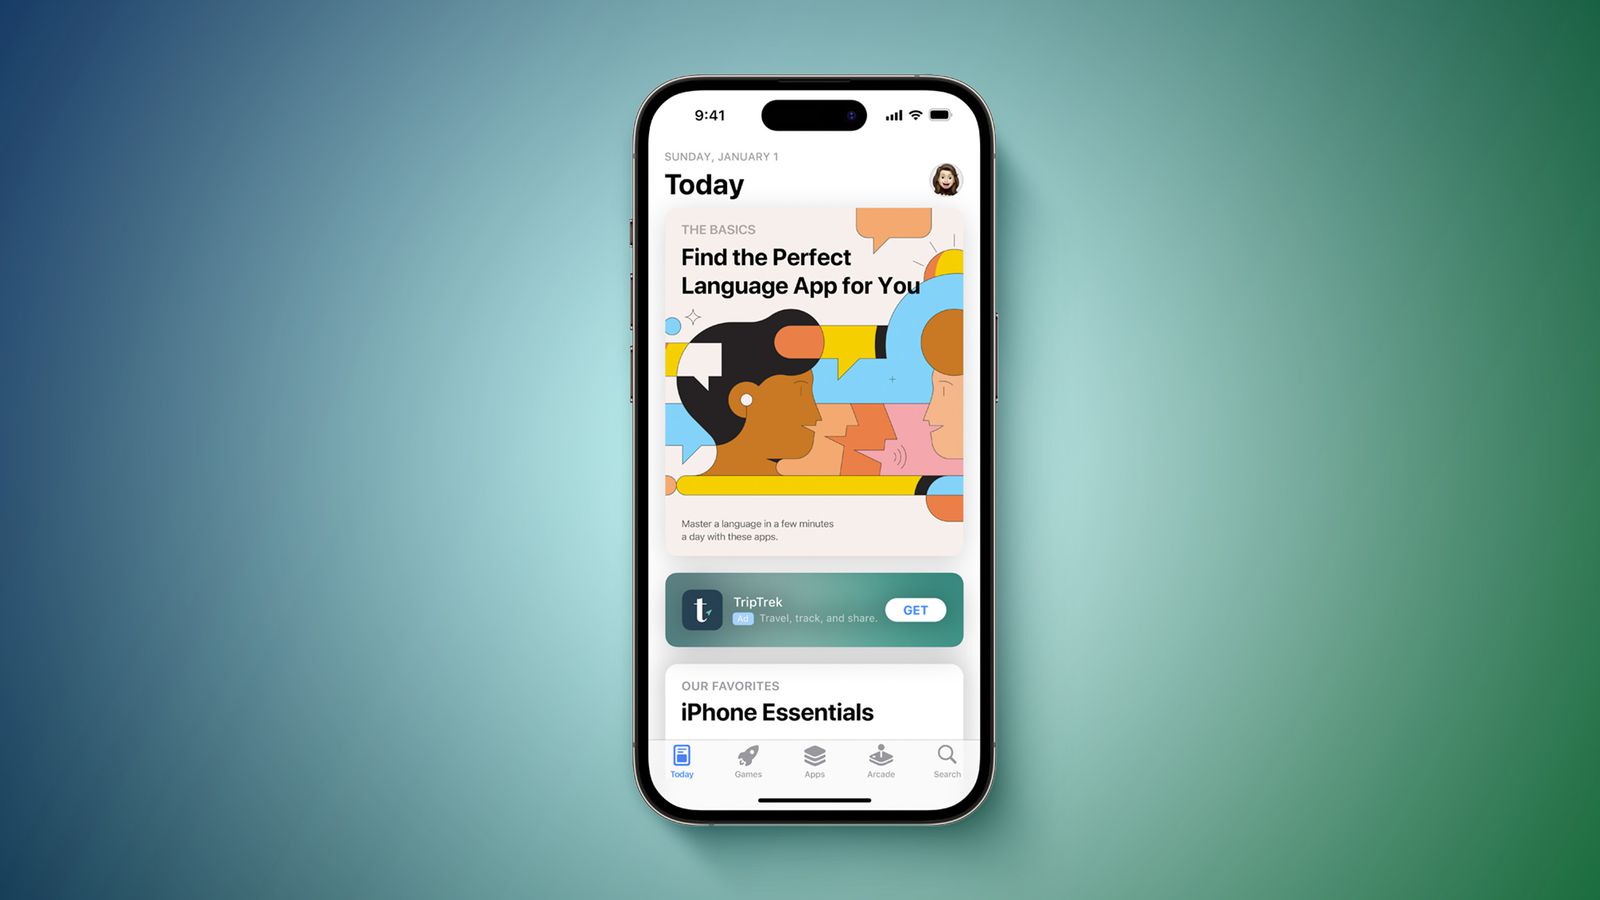 Реклама в App Store на вкладке «Сегодня» перейдёт к более компактному дизайну в июле